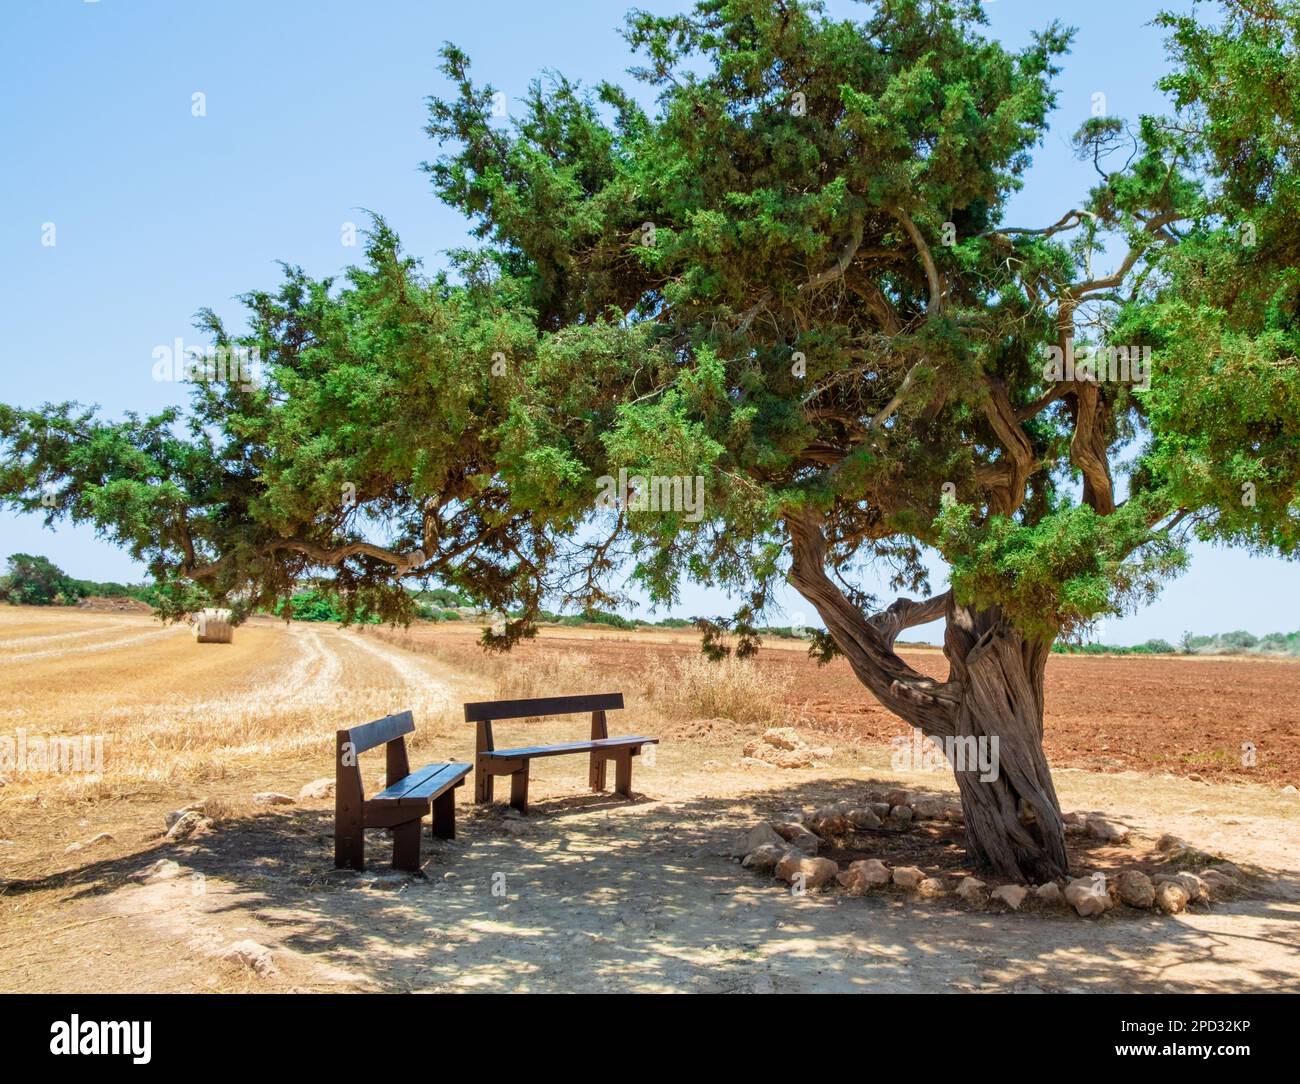 Famoso vecchio albero di ginepro degli amanti vicino ad Ayia Napa su Cipro. Albero d'amore e due panchine in legno in ombra per incontri o relax a Capo Greco National Foto Stock